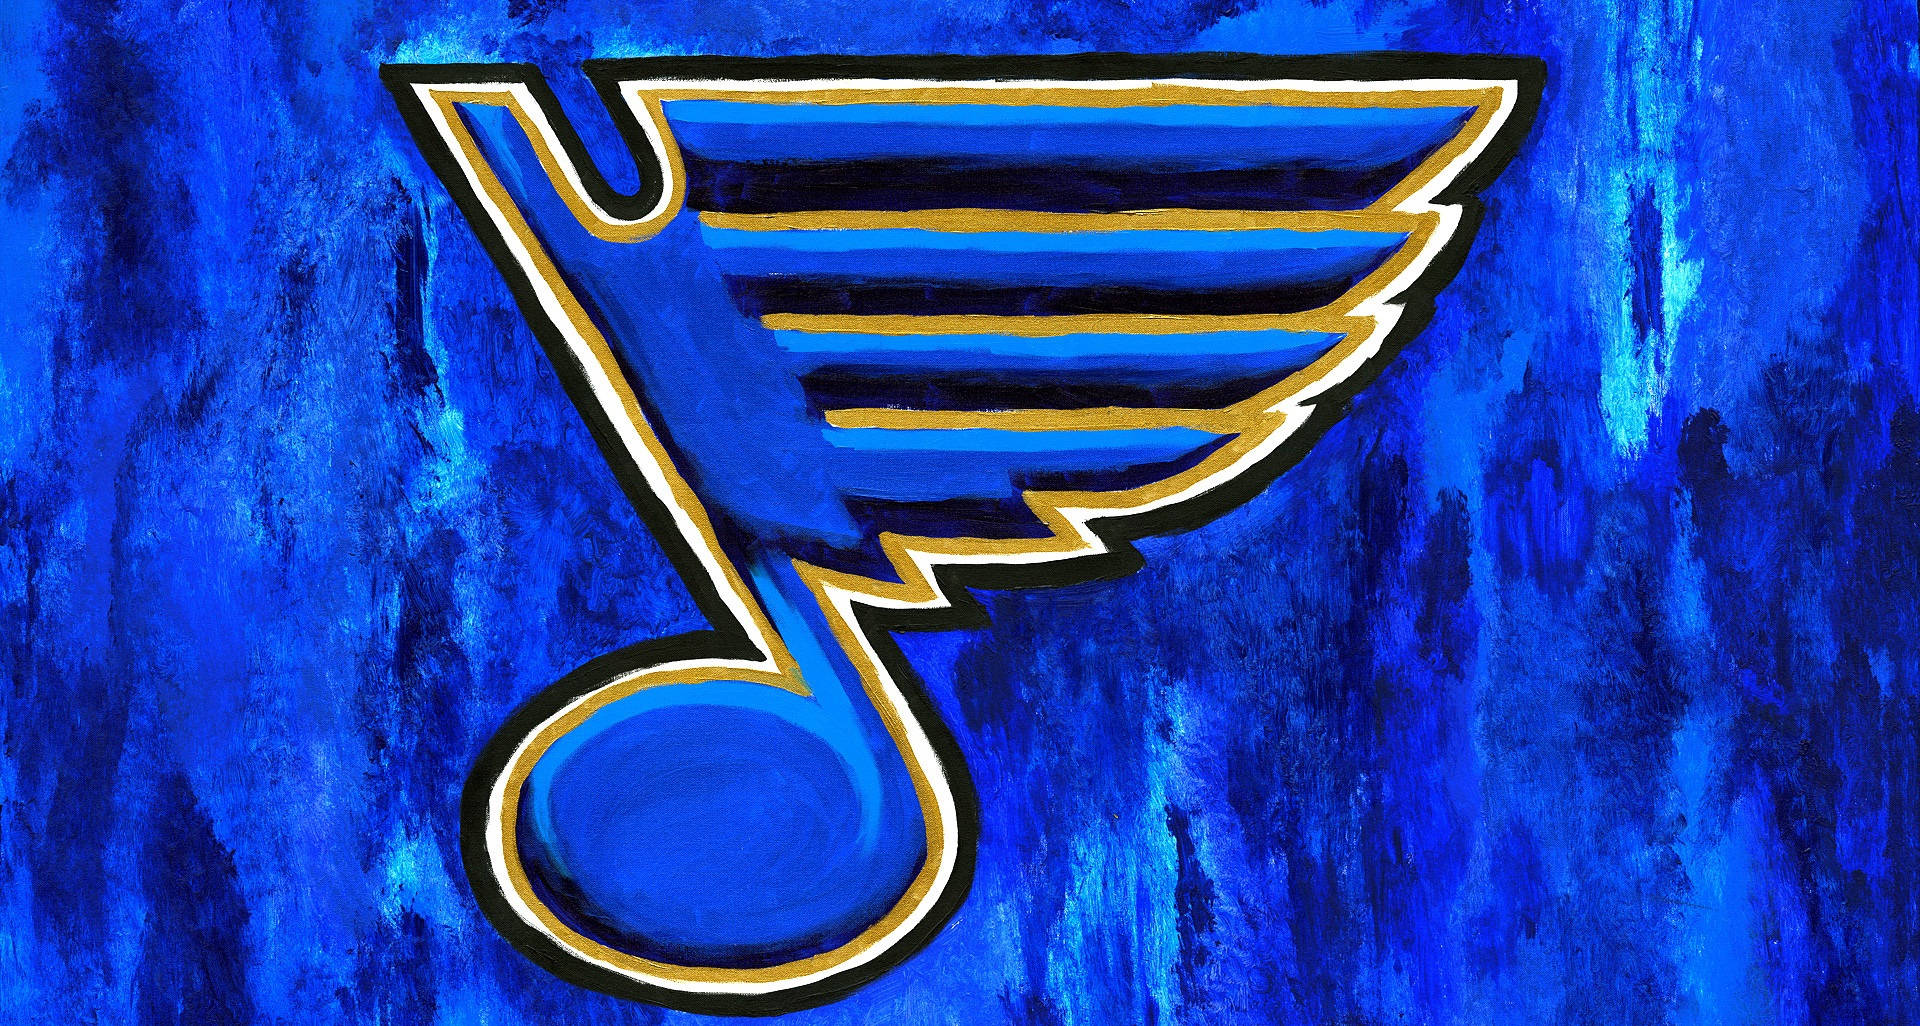 Logotipopintado De Los St. Louis Blues Fondo de pantalla